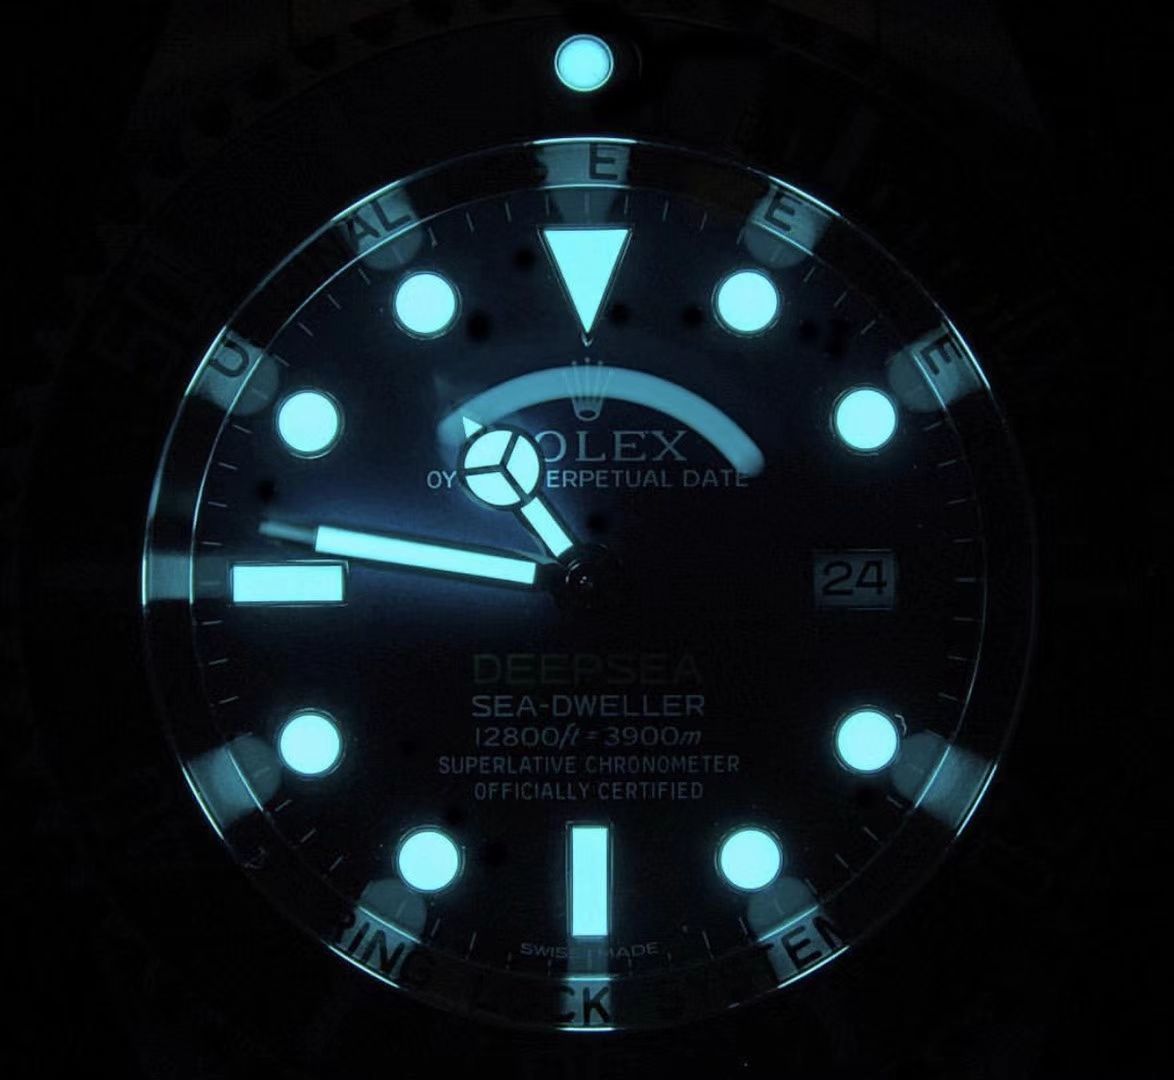 【AR一比一超A高仿手表】劳力士海使型系列116660-98210 蓝盘腕表(904钢渐变蓝鬼王) / R208